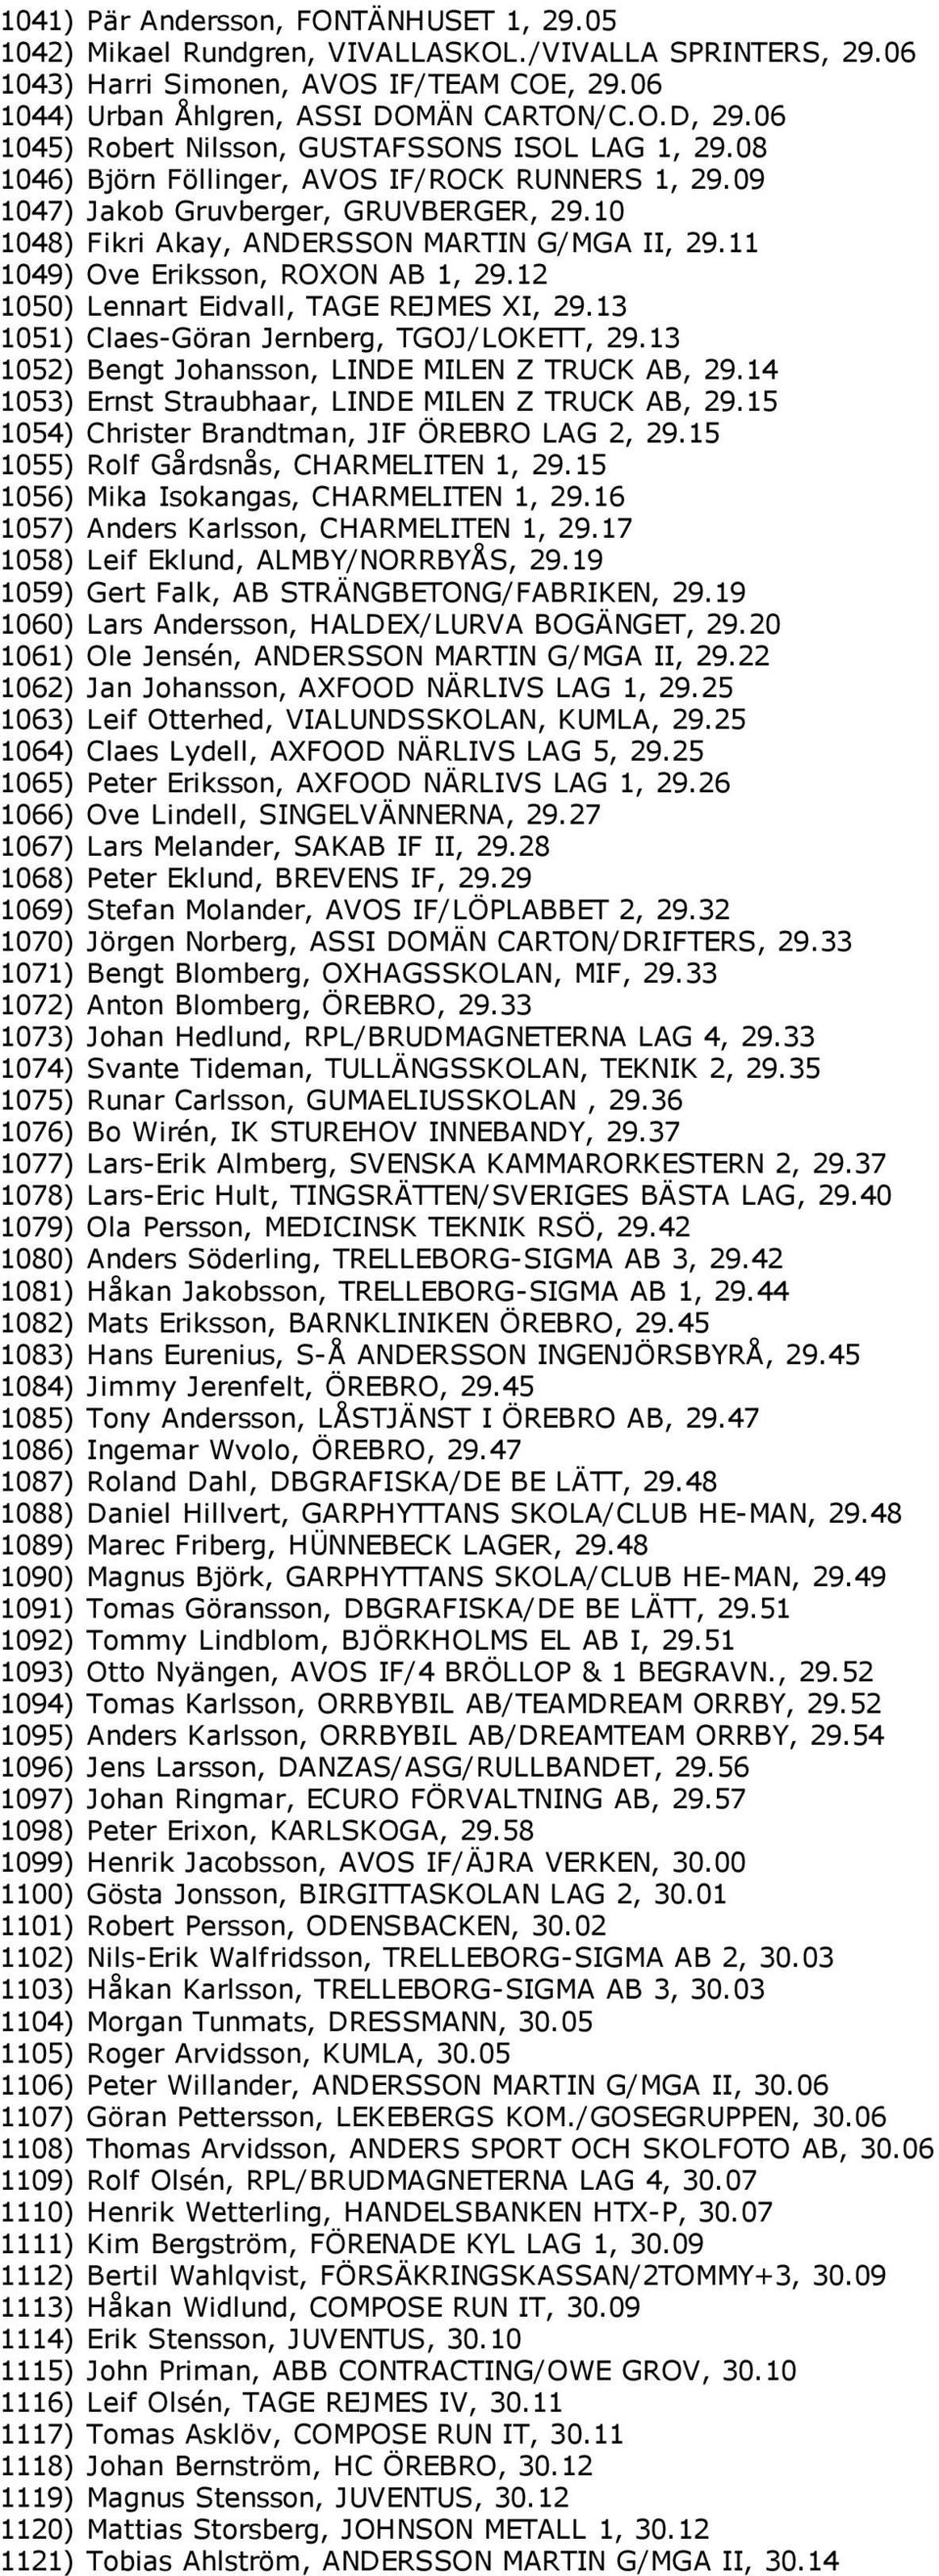 11 1049) Ove Eriksson, ROXON AB 1, 29.12 1050) Lennart Eidvall, TAGE REJMES XI, 29.13 1051) Claes Göran Jernberg, TGOJ/LOKETT, 29.13 1052) Bengt Johansson, LINDE MILEN Z TRUCK AB, 29.